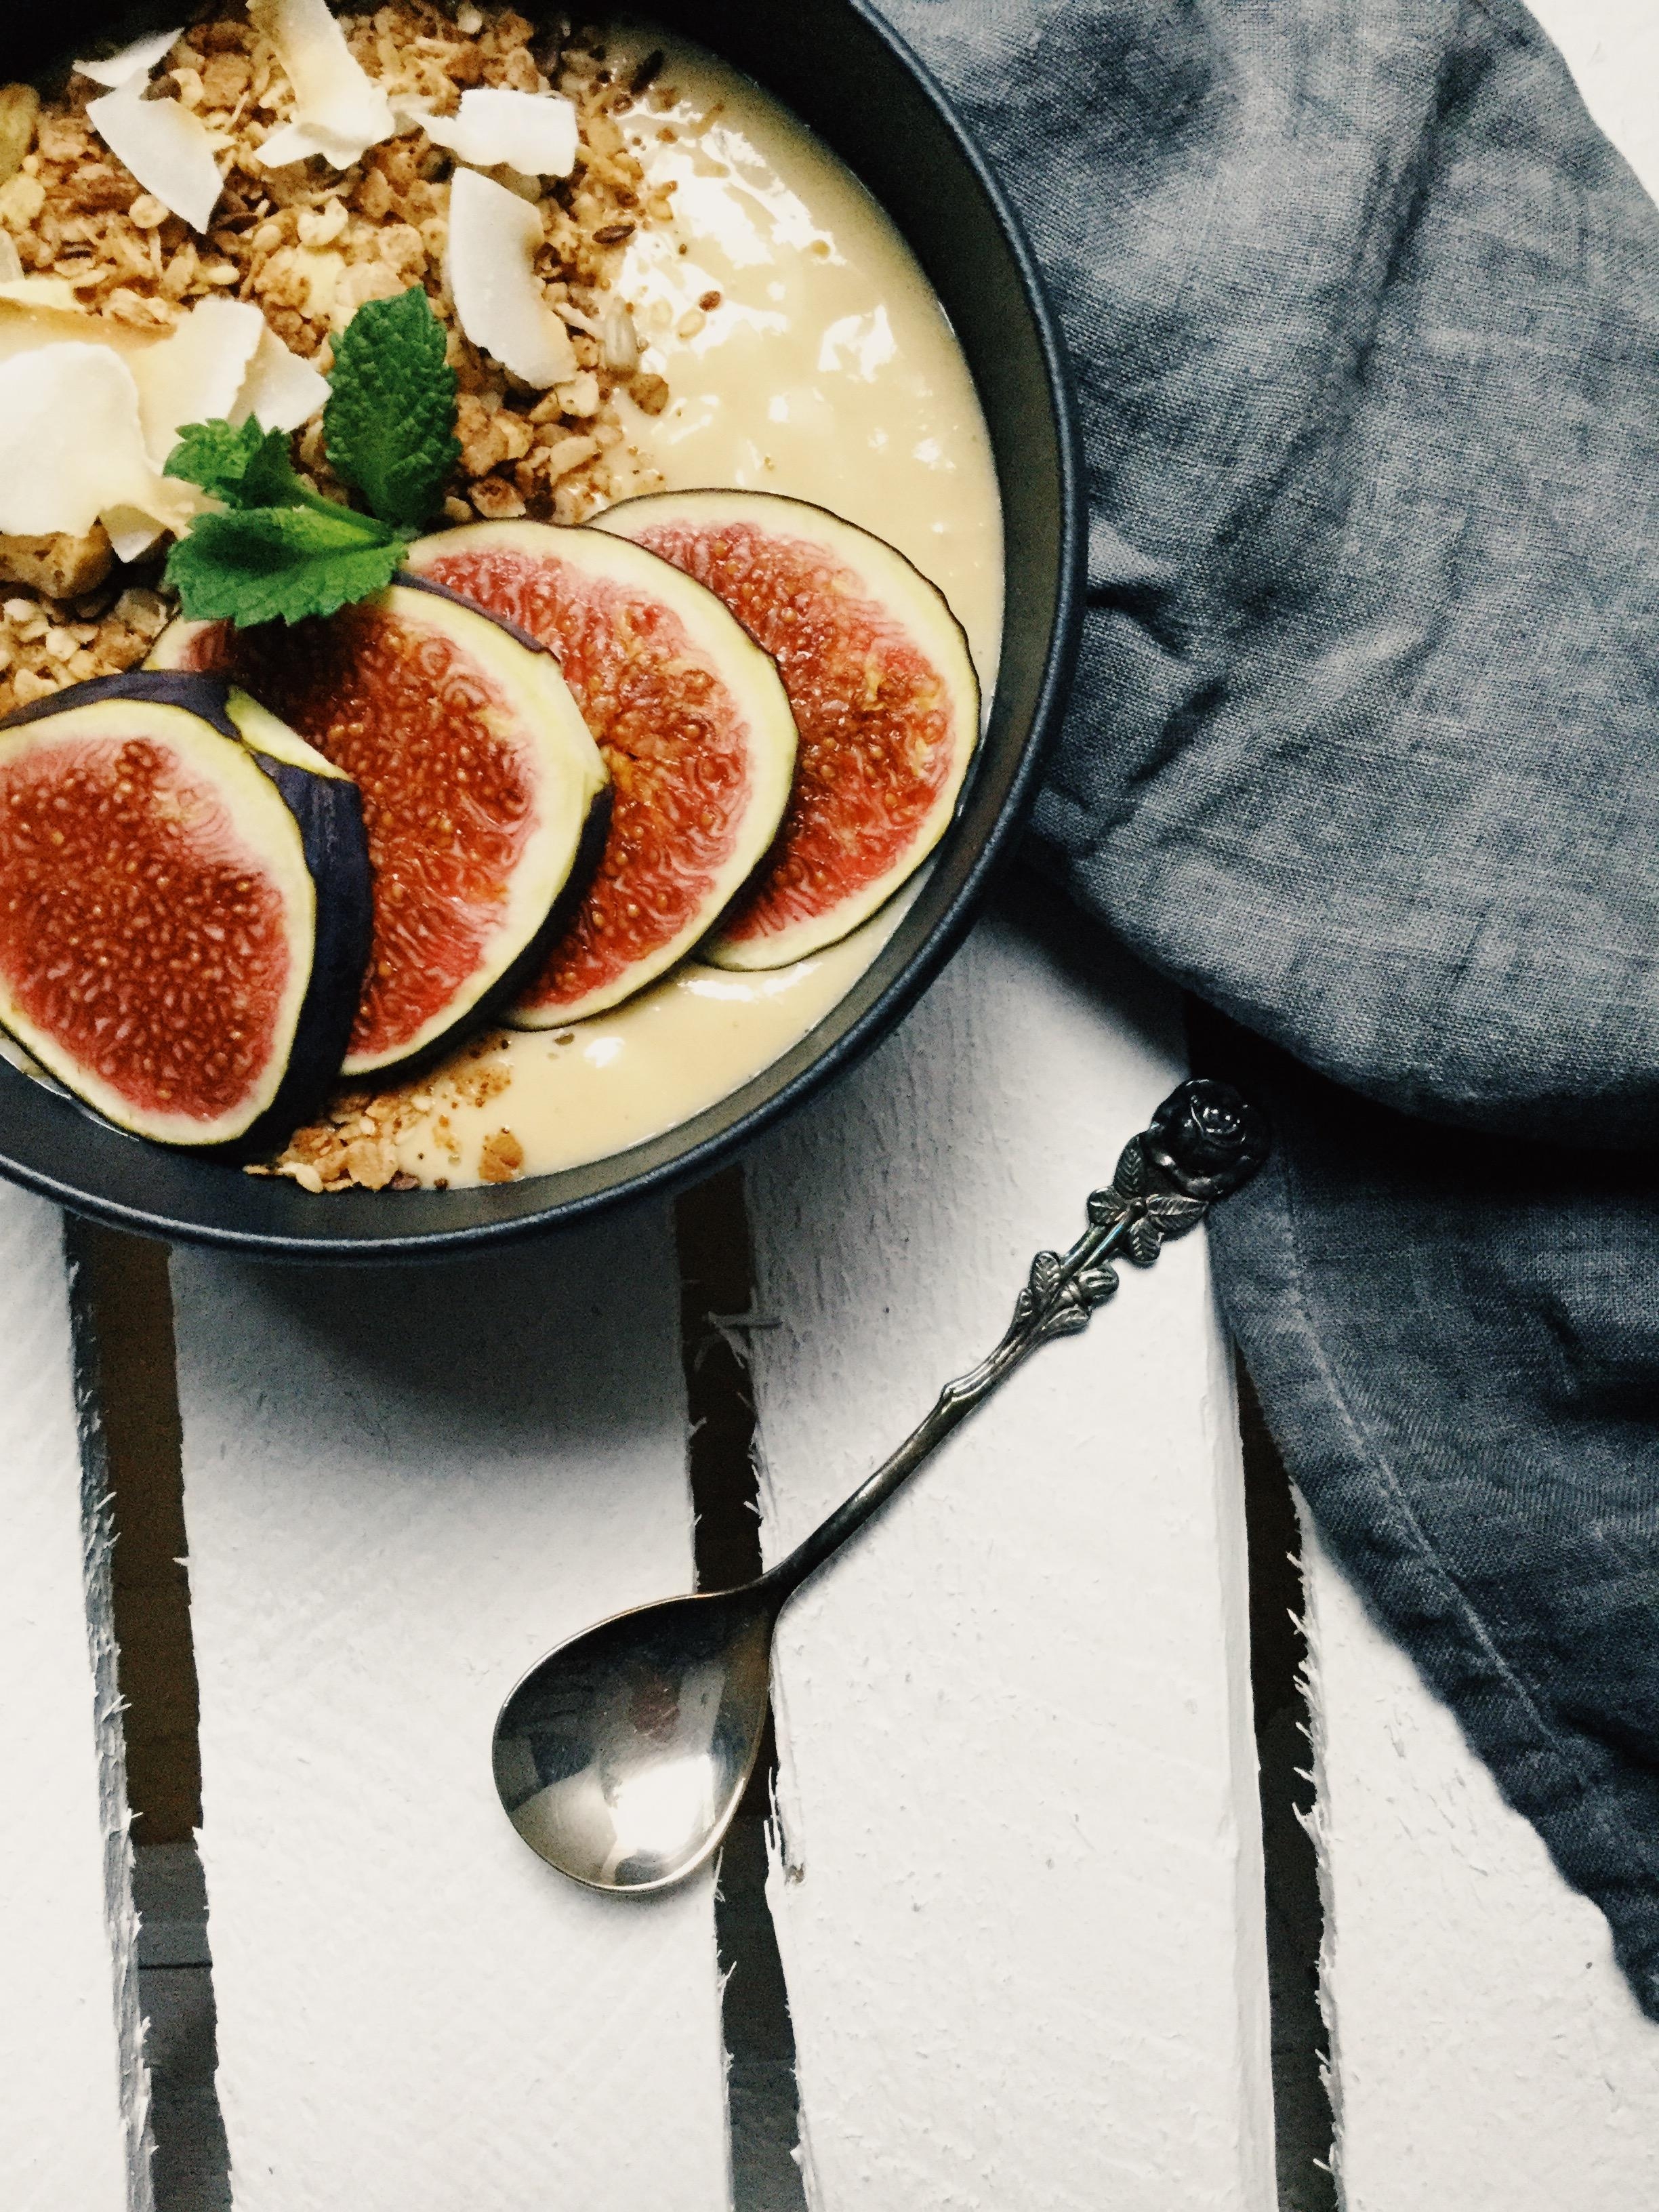 Feigen -❤️ Leckeres und gesundes Frühstück 😋 #foodlove #feigen #vegan #lecker #gesund #smoothiebowl